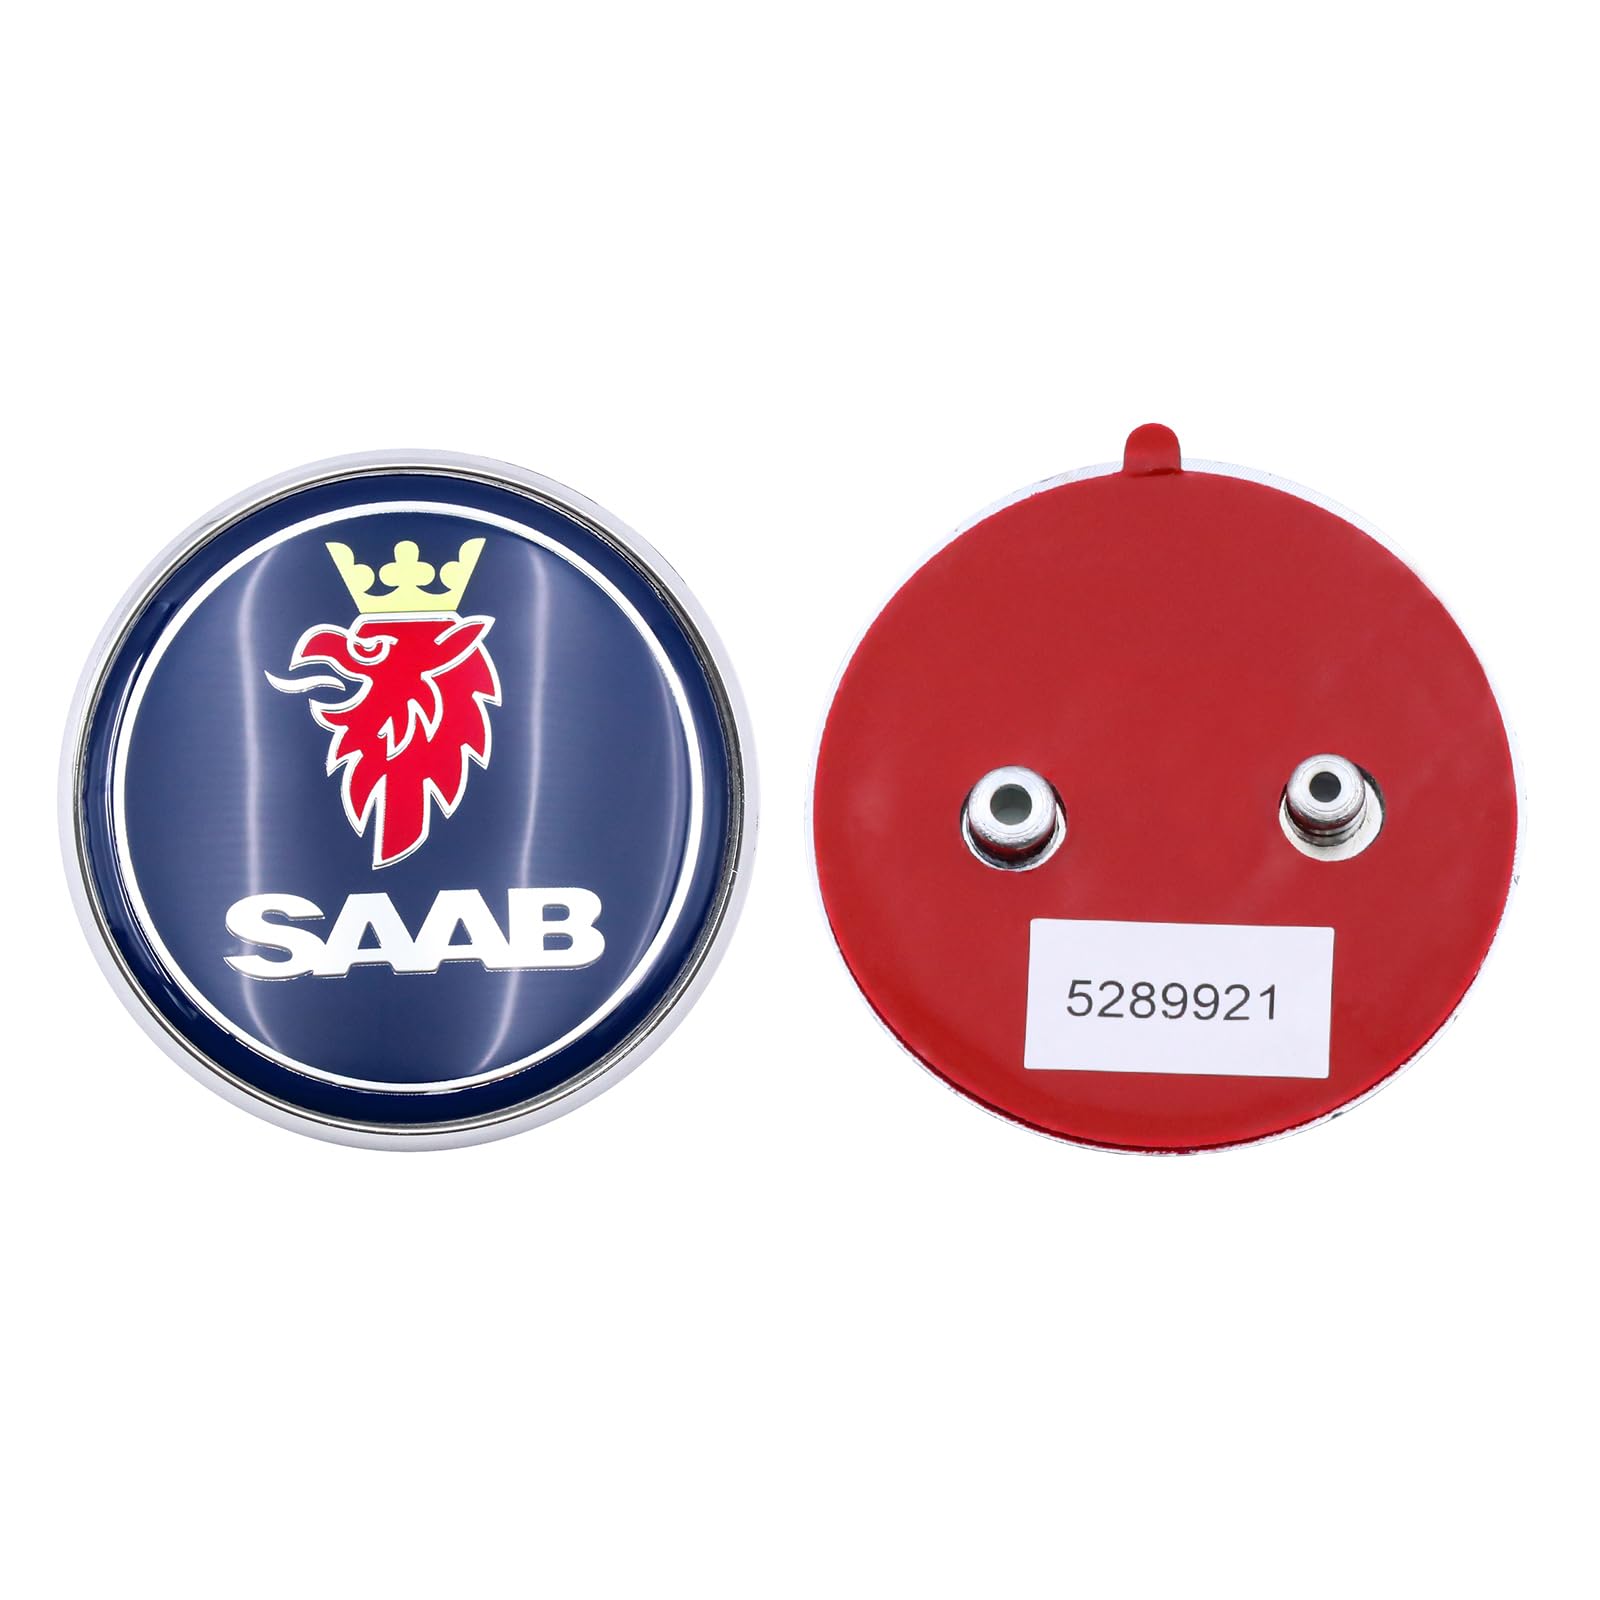 1 Stück 68 mm blaues Auto-Emblem für Heckklappe, passend für Saab 9–5 95 Kombi 5289921 von FTC